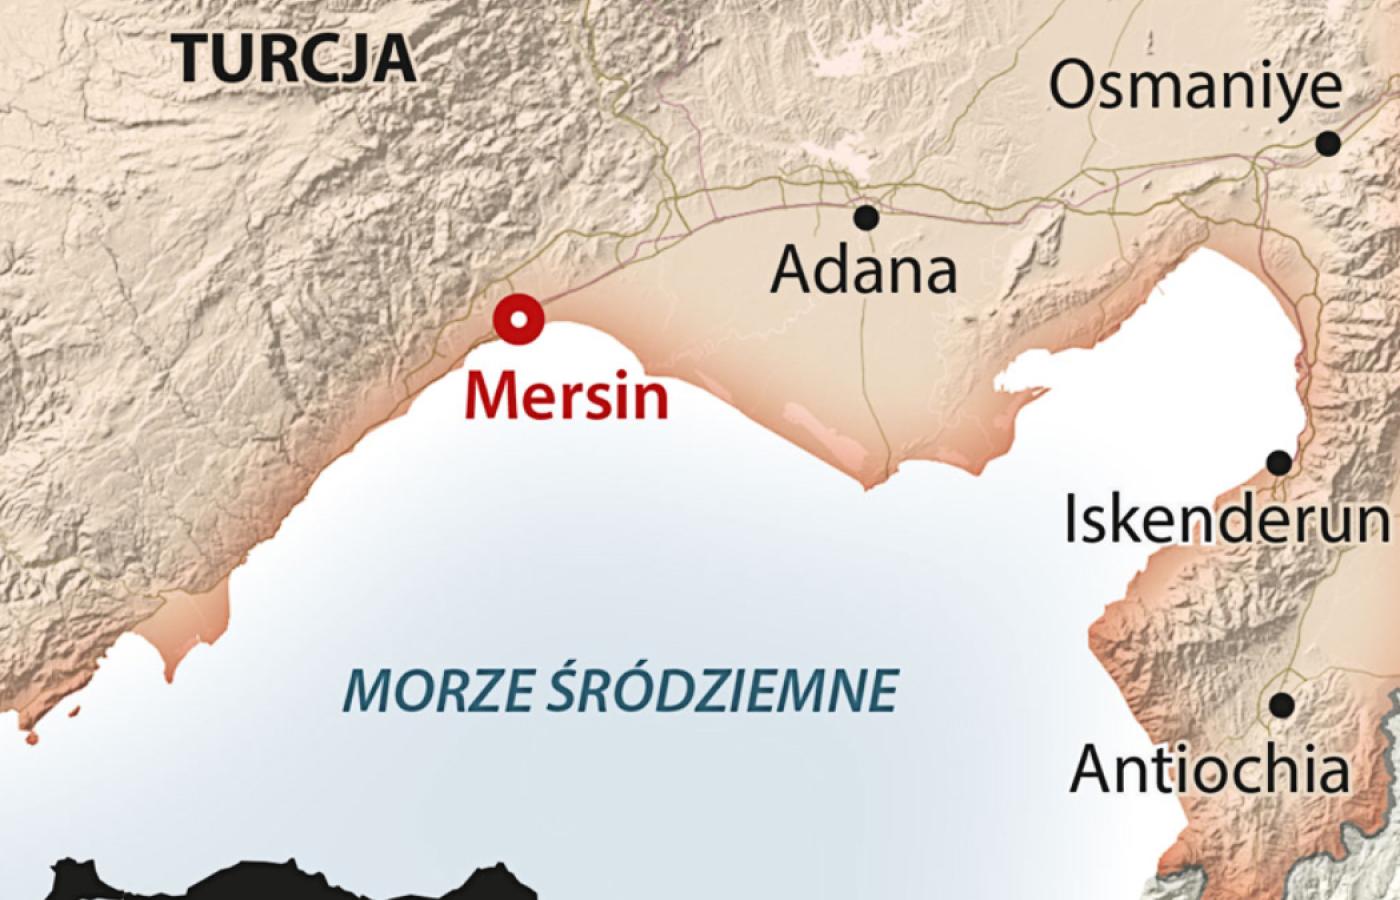 Mersin obsługuje miesięcznie ponad 250 statków z przepakowanym towarem, które kierują do czarnomorskiego Noworosyjska.